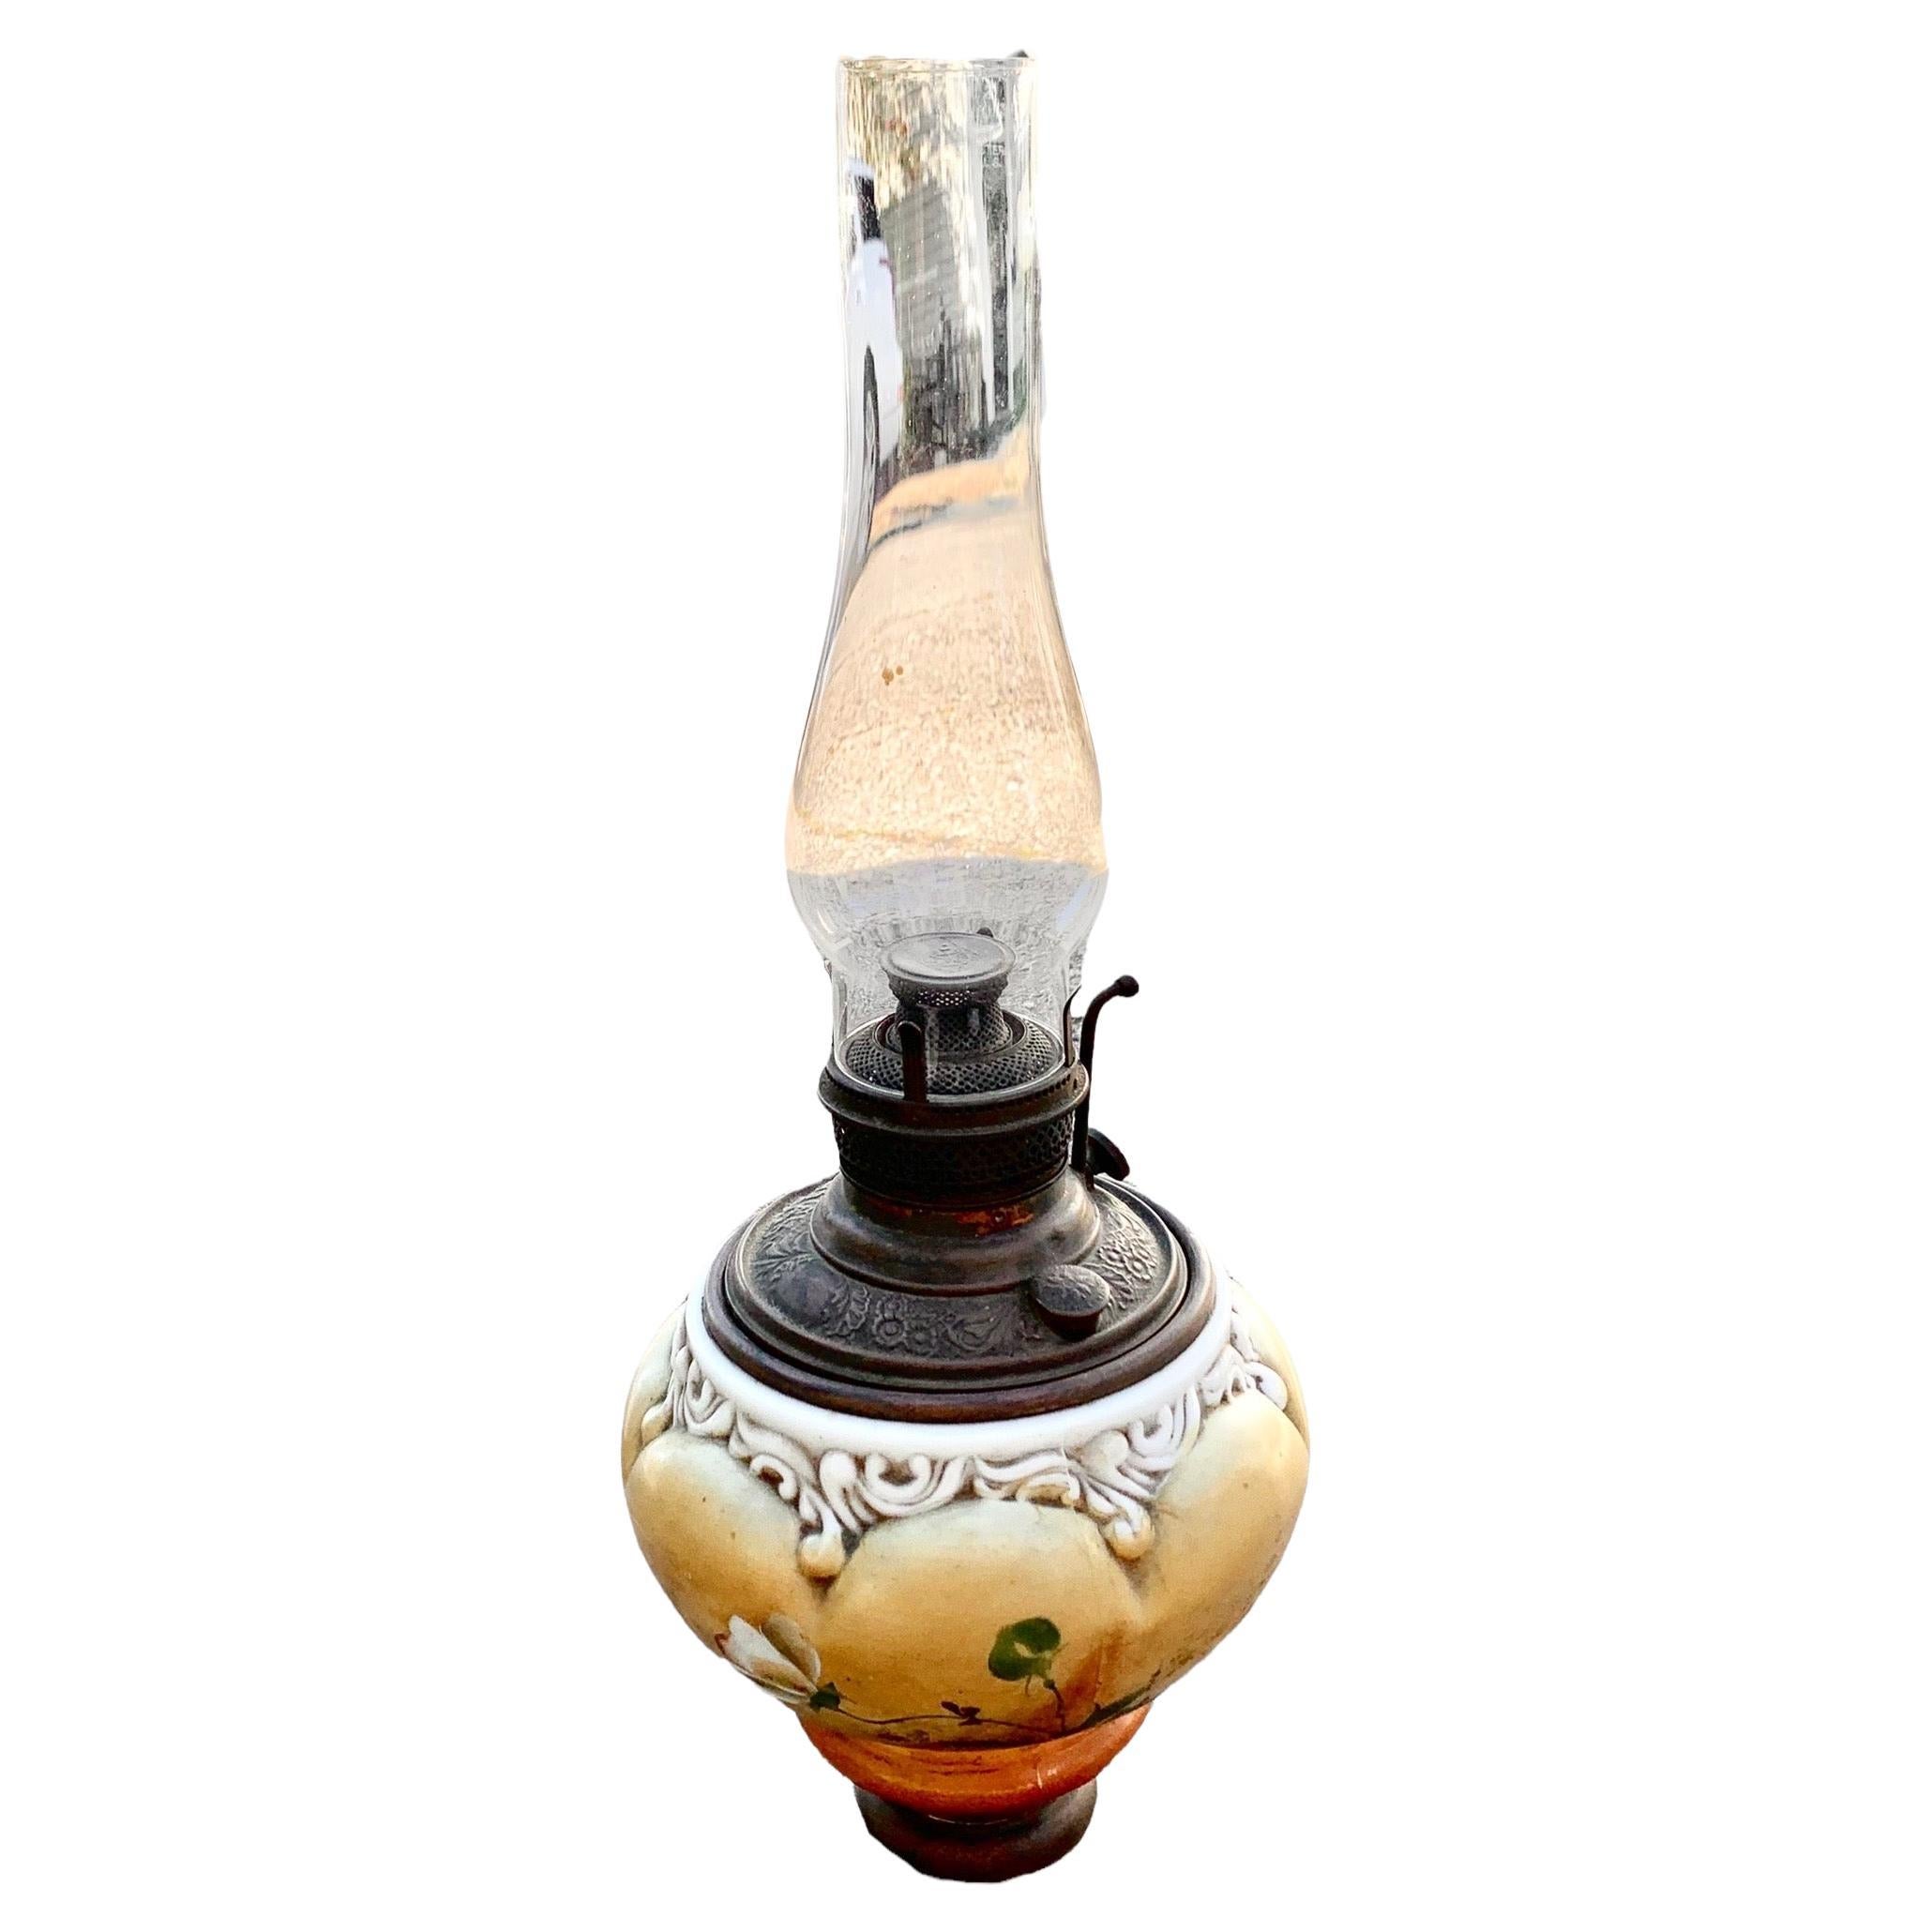 Lampe à huile américaine de style victorien, avec une remarquable police de caractère florale peinte à la main, une base filigrane en laiton moulé, une cheminée soufflée à la main et son brûleur et ses pièces d'origine. Il s'agit de l'élégance